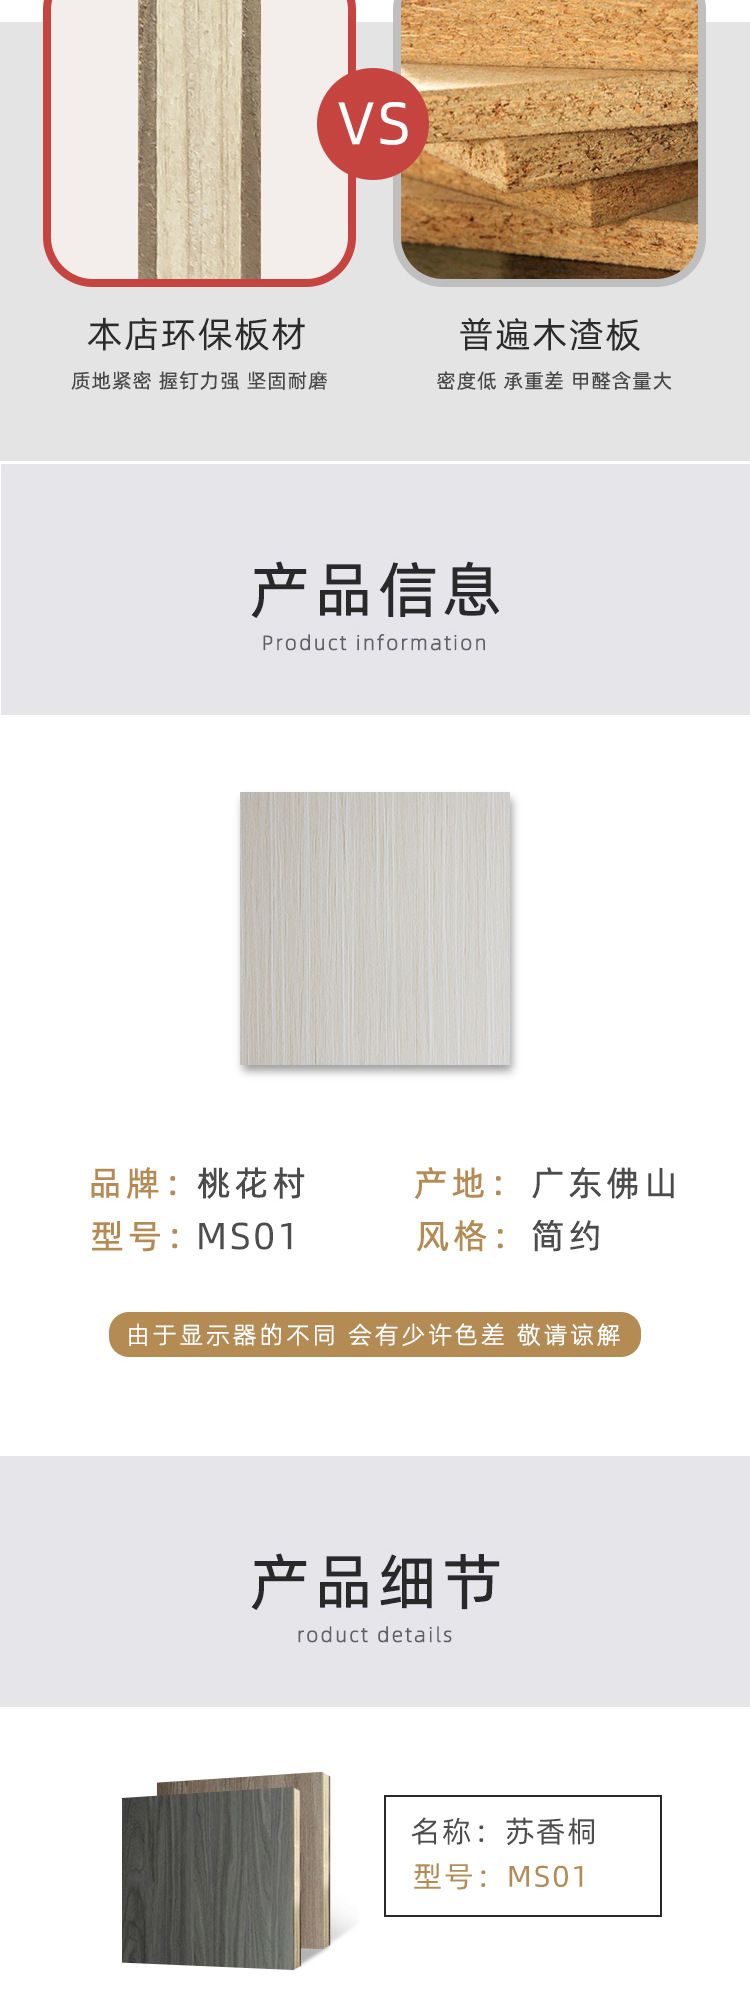 桃花村 ms-01 苏香铜 生态板厂家 专业生产三聚胺免漆板